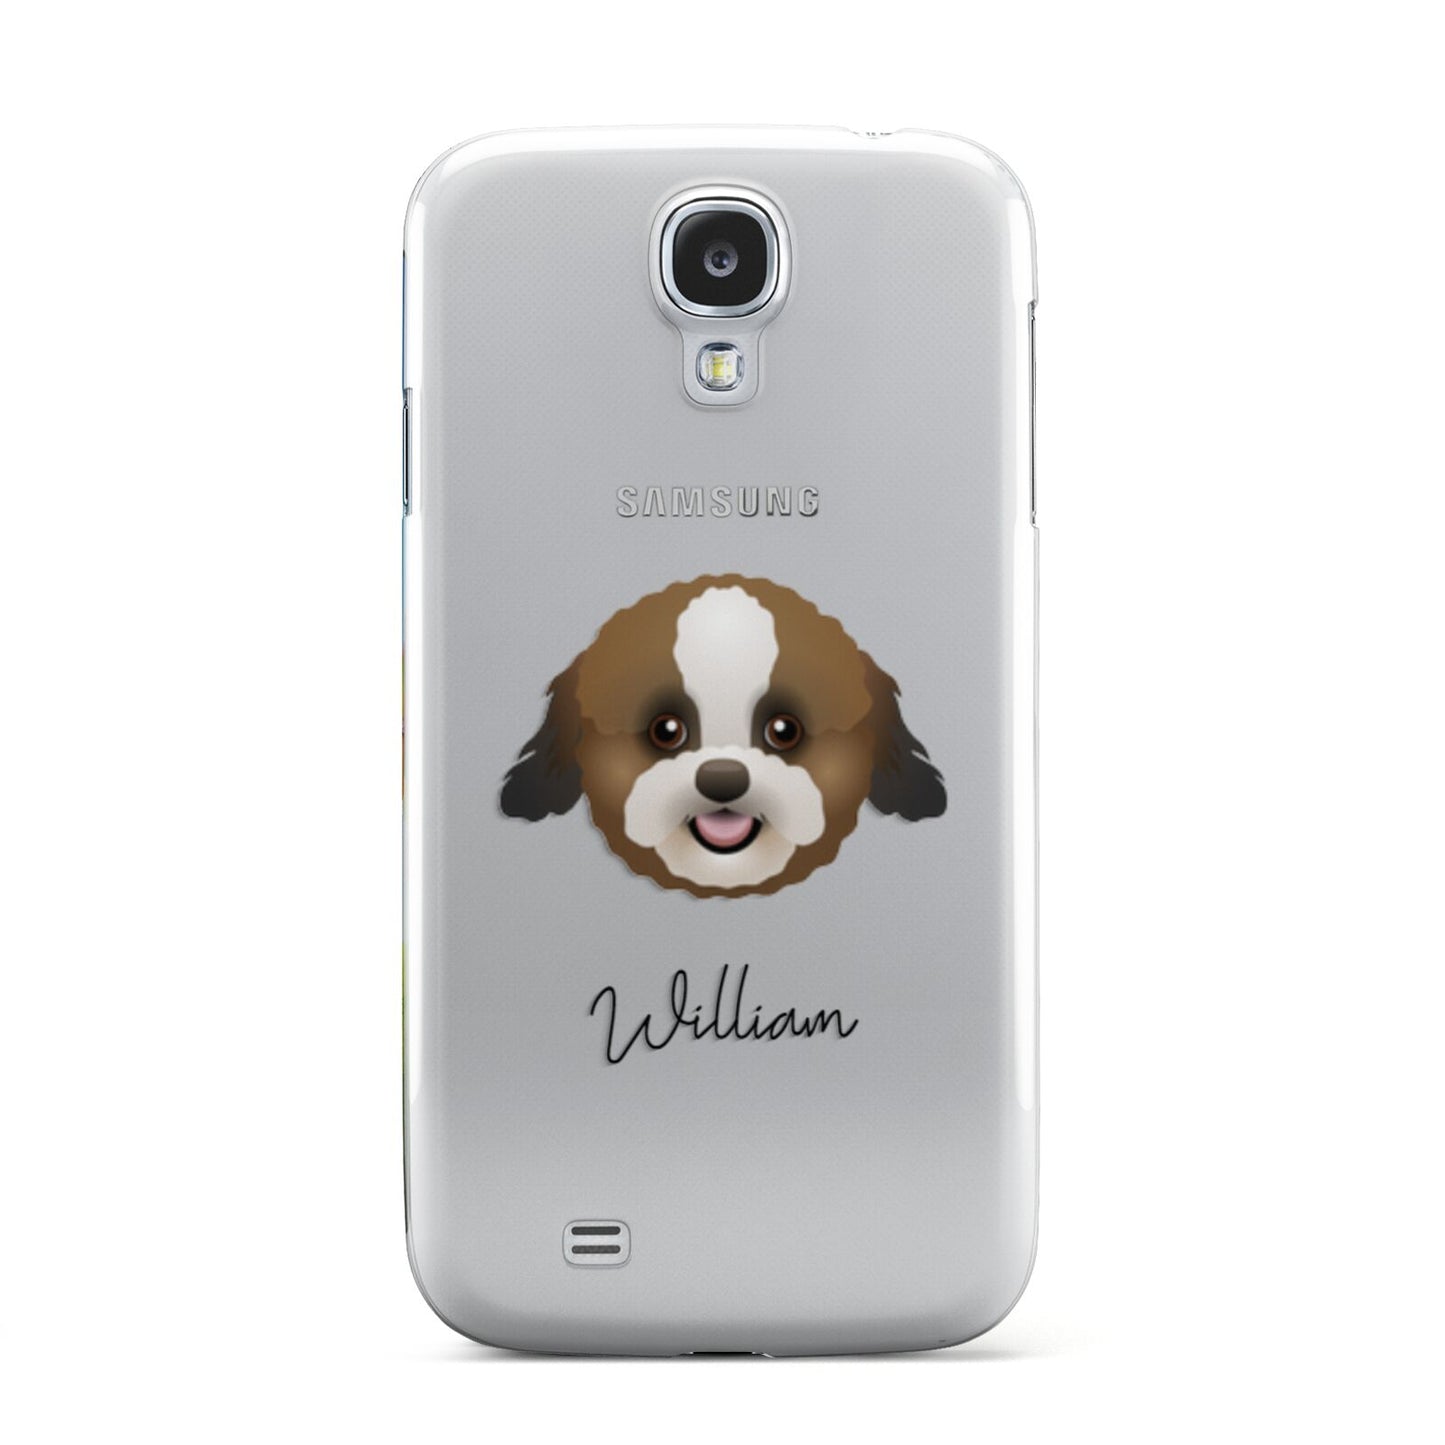 Zuchon Personalised Samsung Galaxy S4 Case